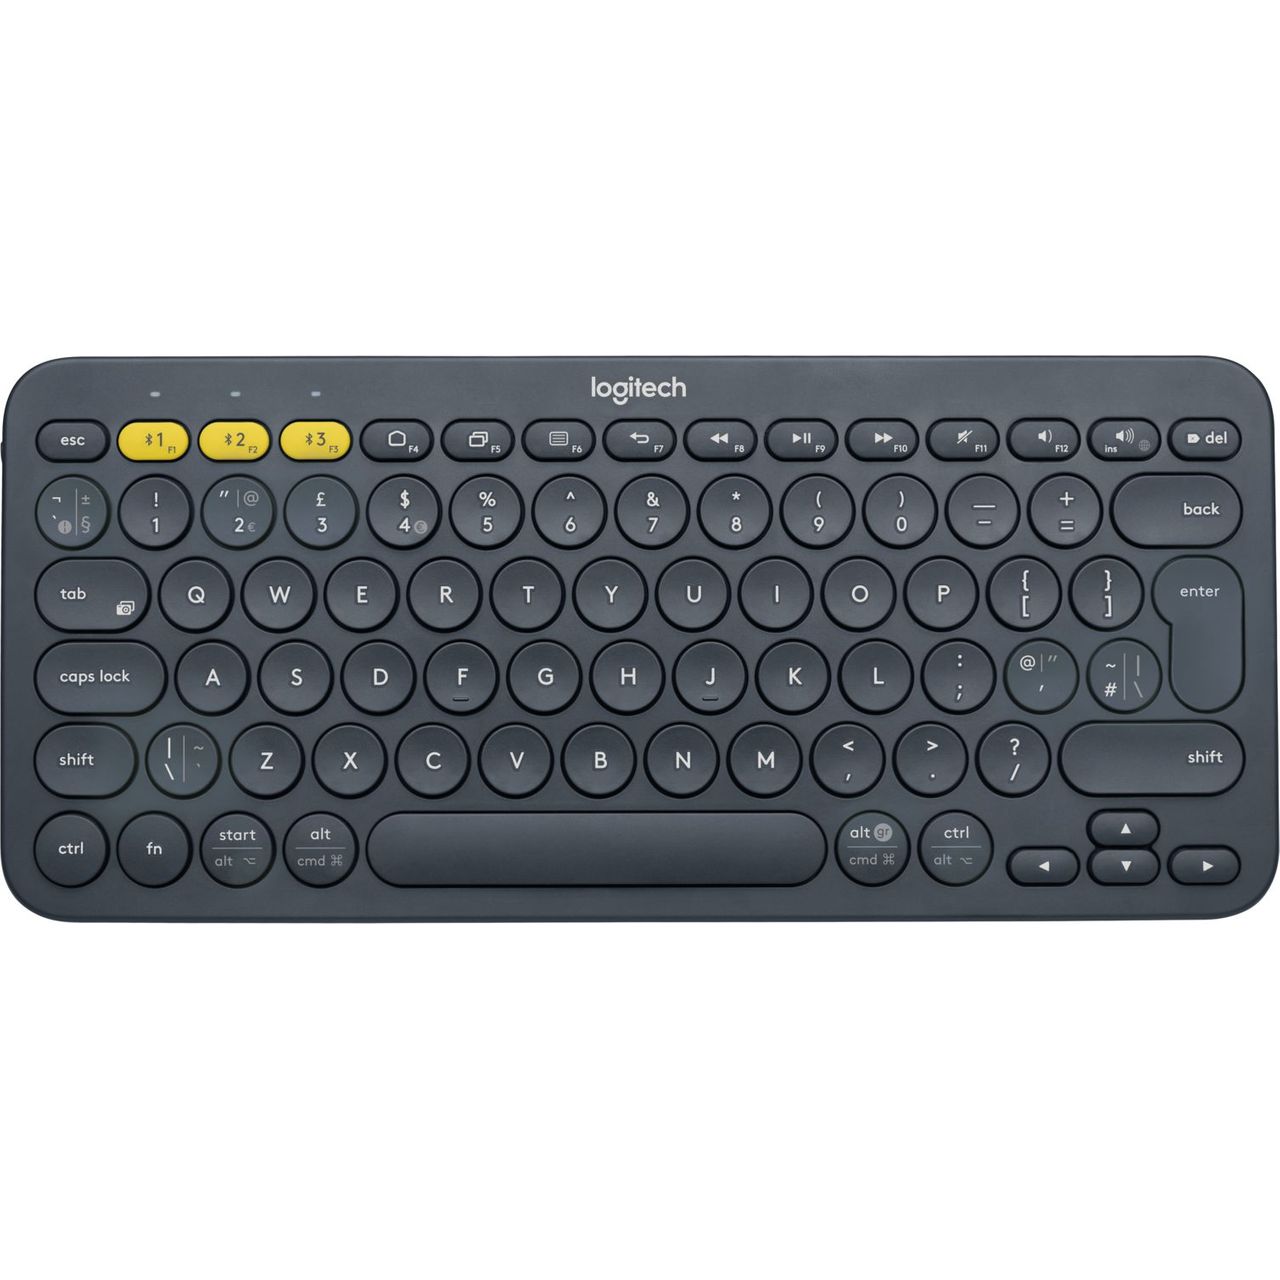 Logitech Multi-Device K380 Bluetooth Keyboard Review